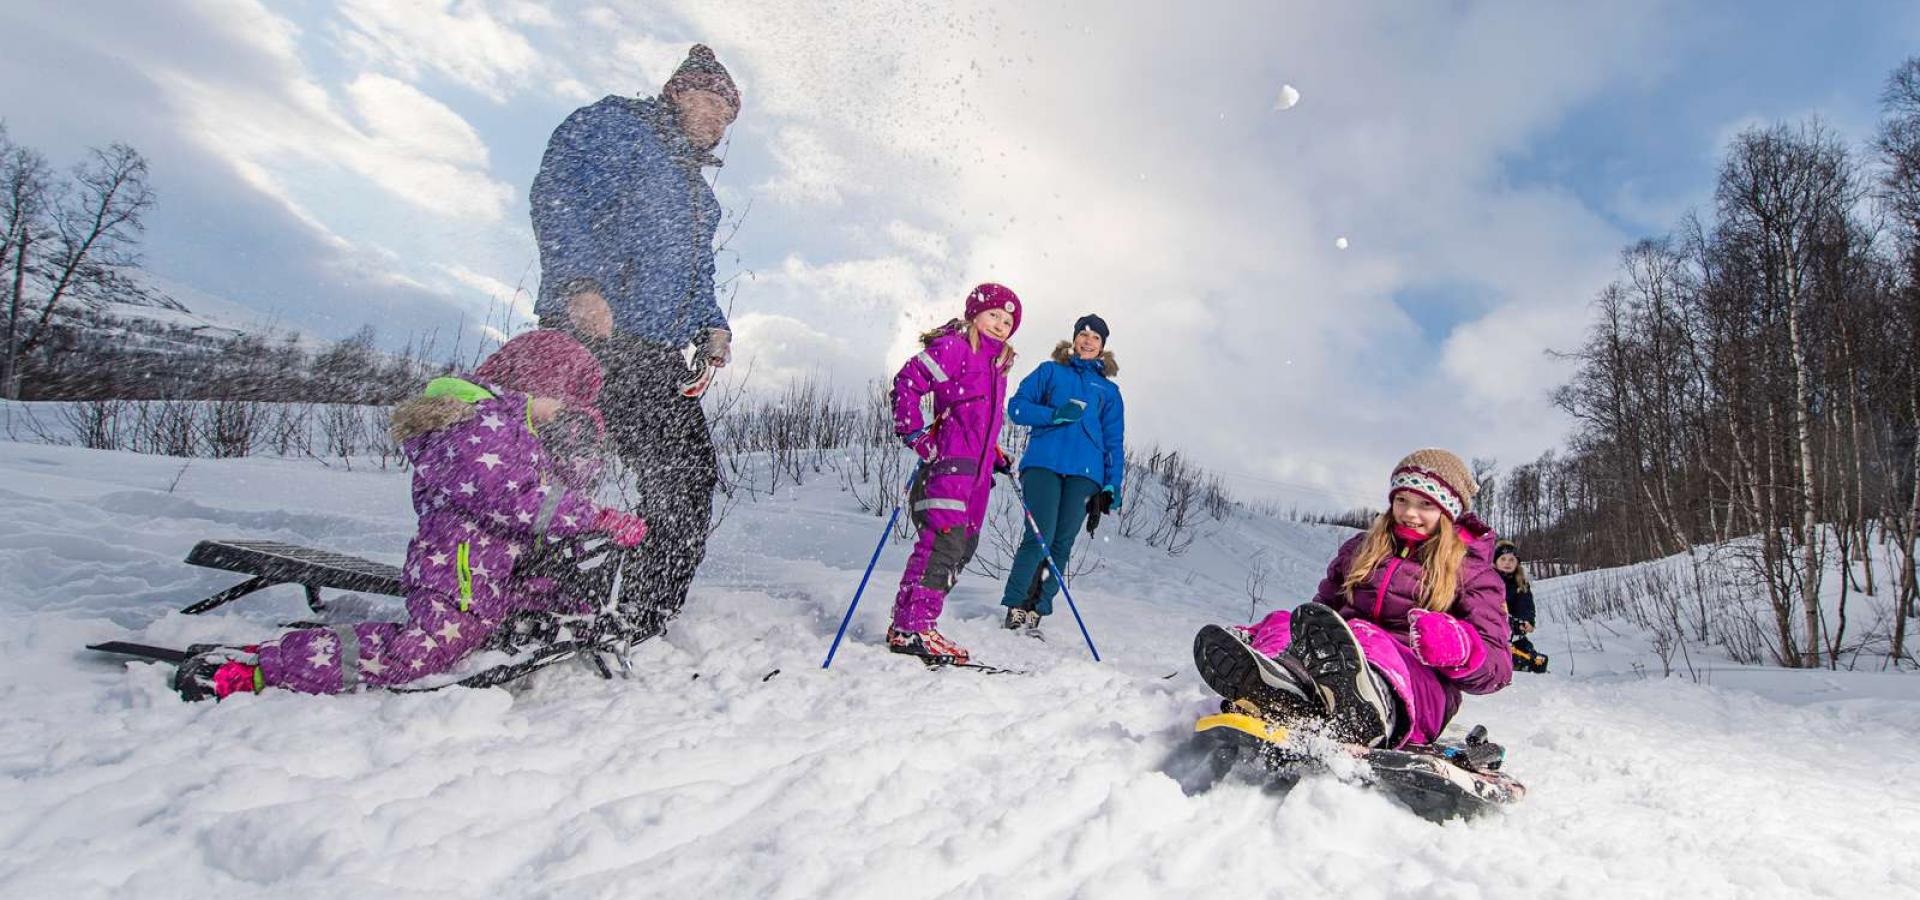 Lek og moro i snøen ved Saga, Nordreisa, Nord Norge